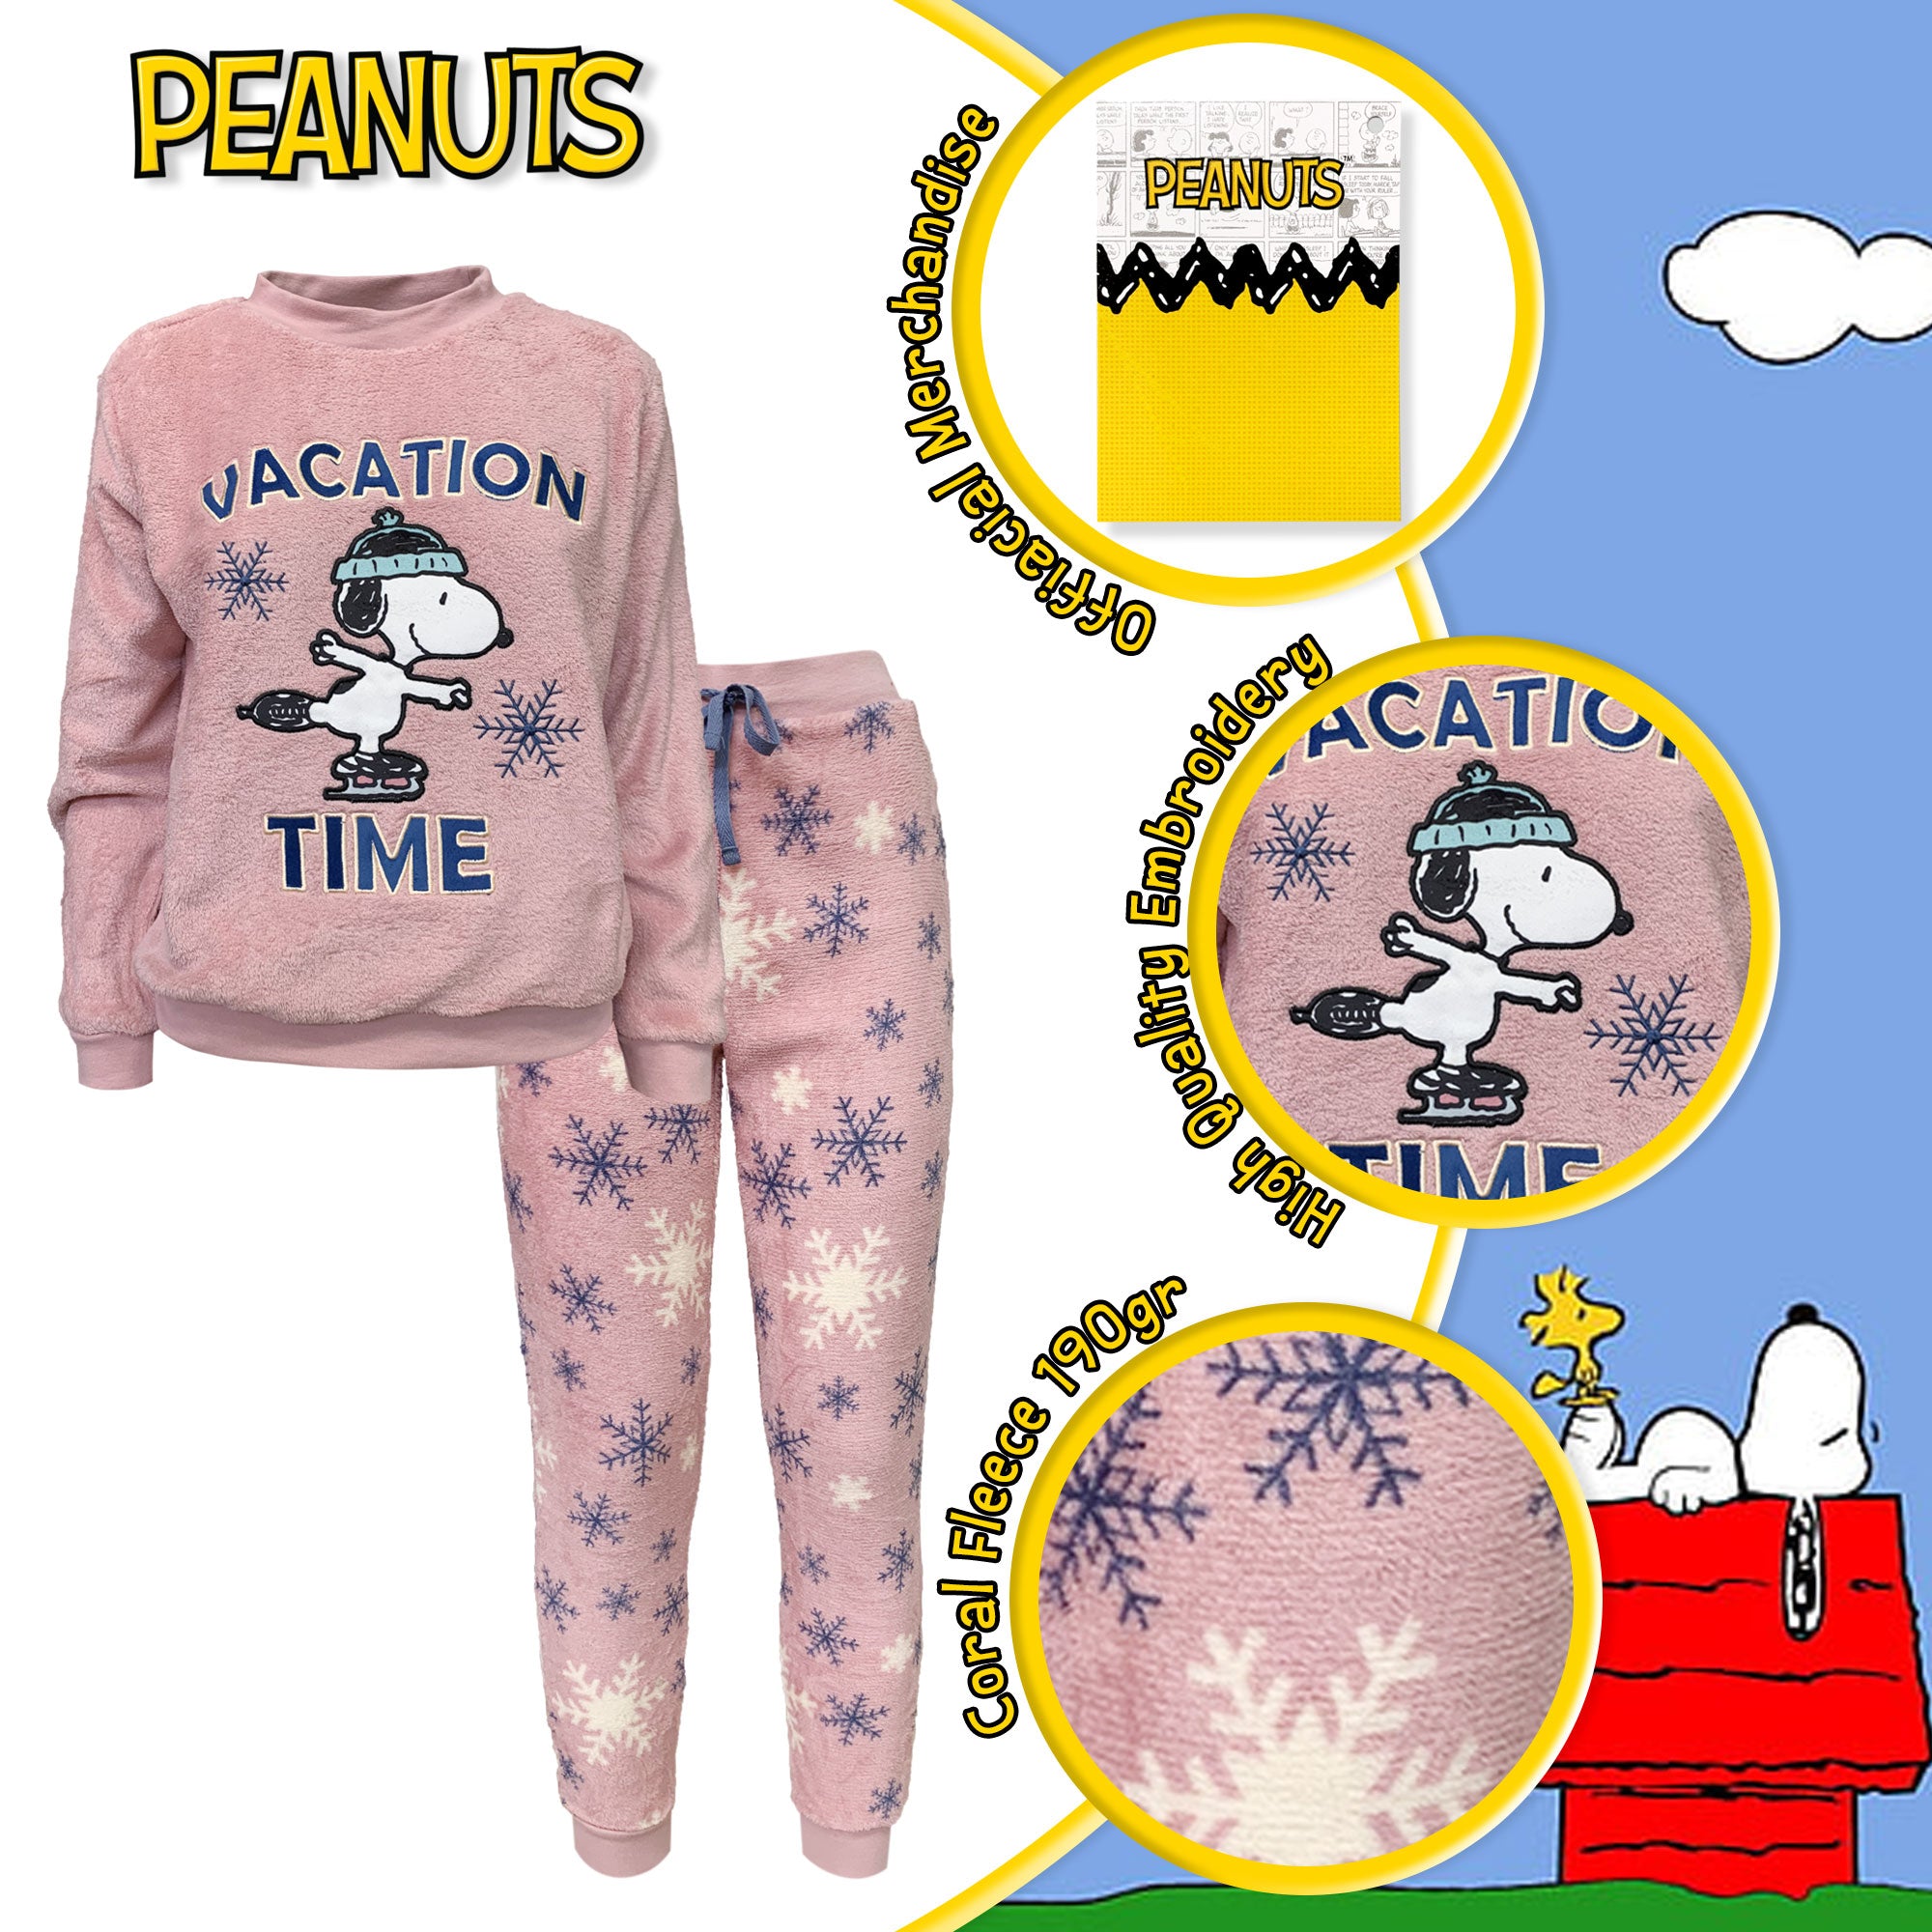 Pigiama invernale lungo donna Peanuts Snoopy maglia e pantalone in pile 6216